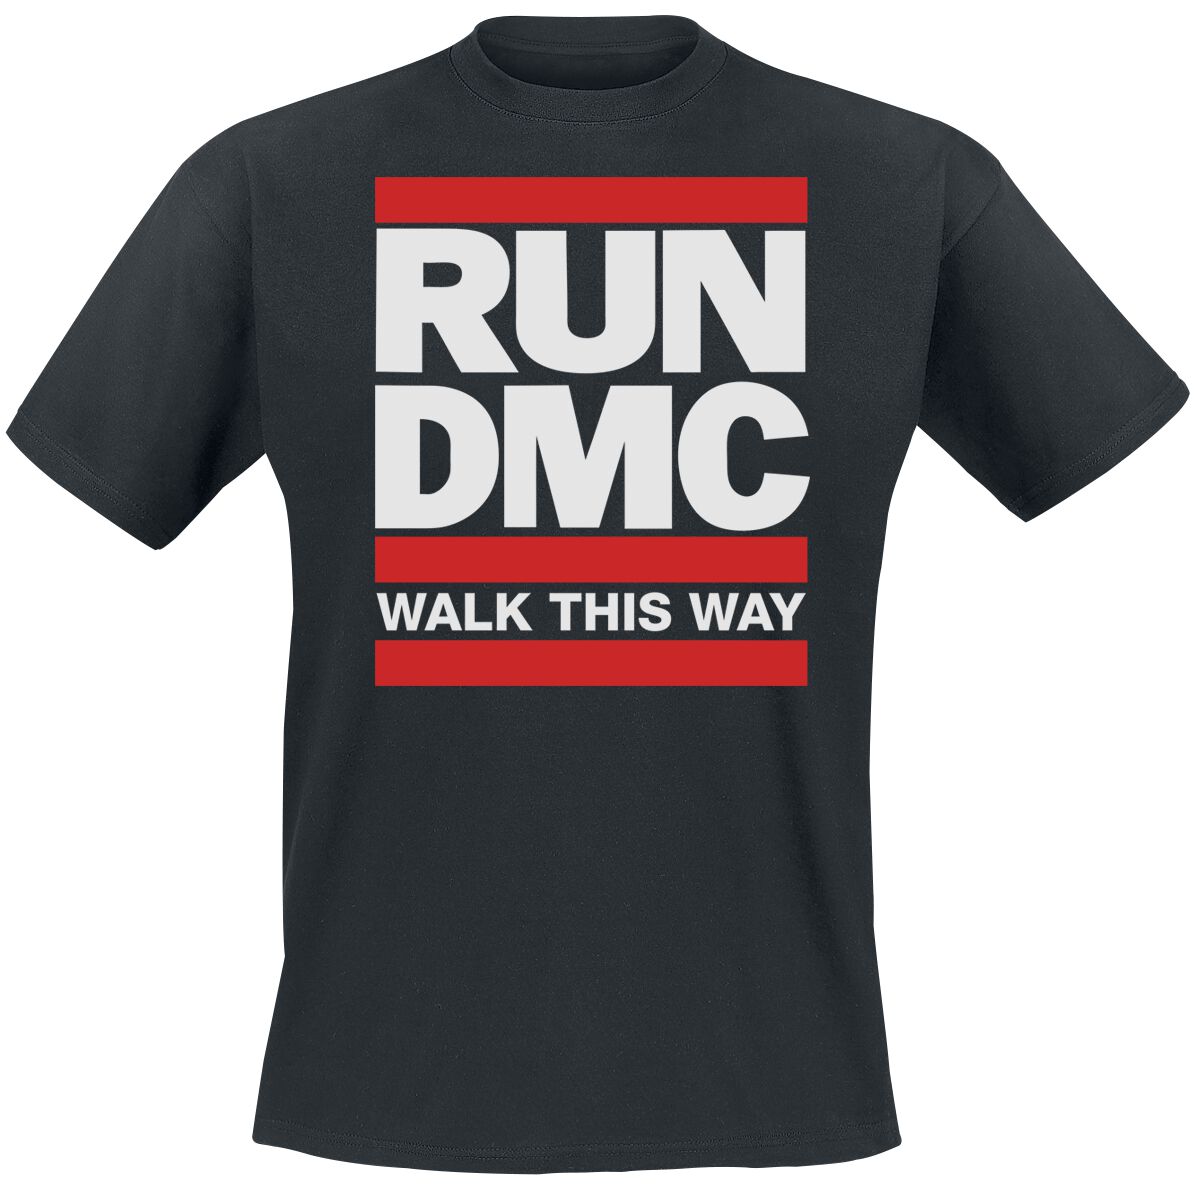 Run DMC T-Shirt - Walk This Way` - S bis 3XL - für Männer - Größe XL - schwarz  - Lizenziertes Merchandise!